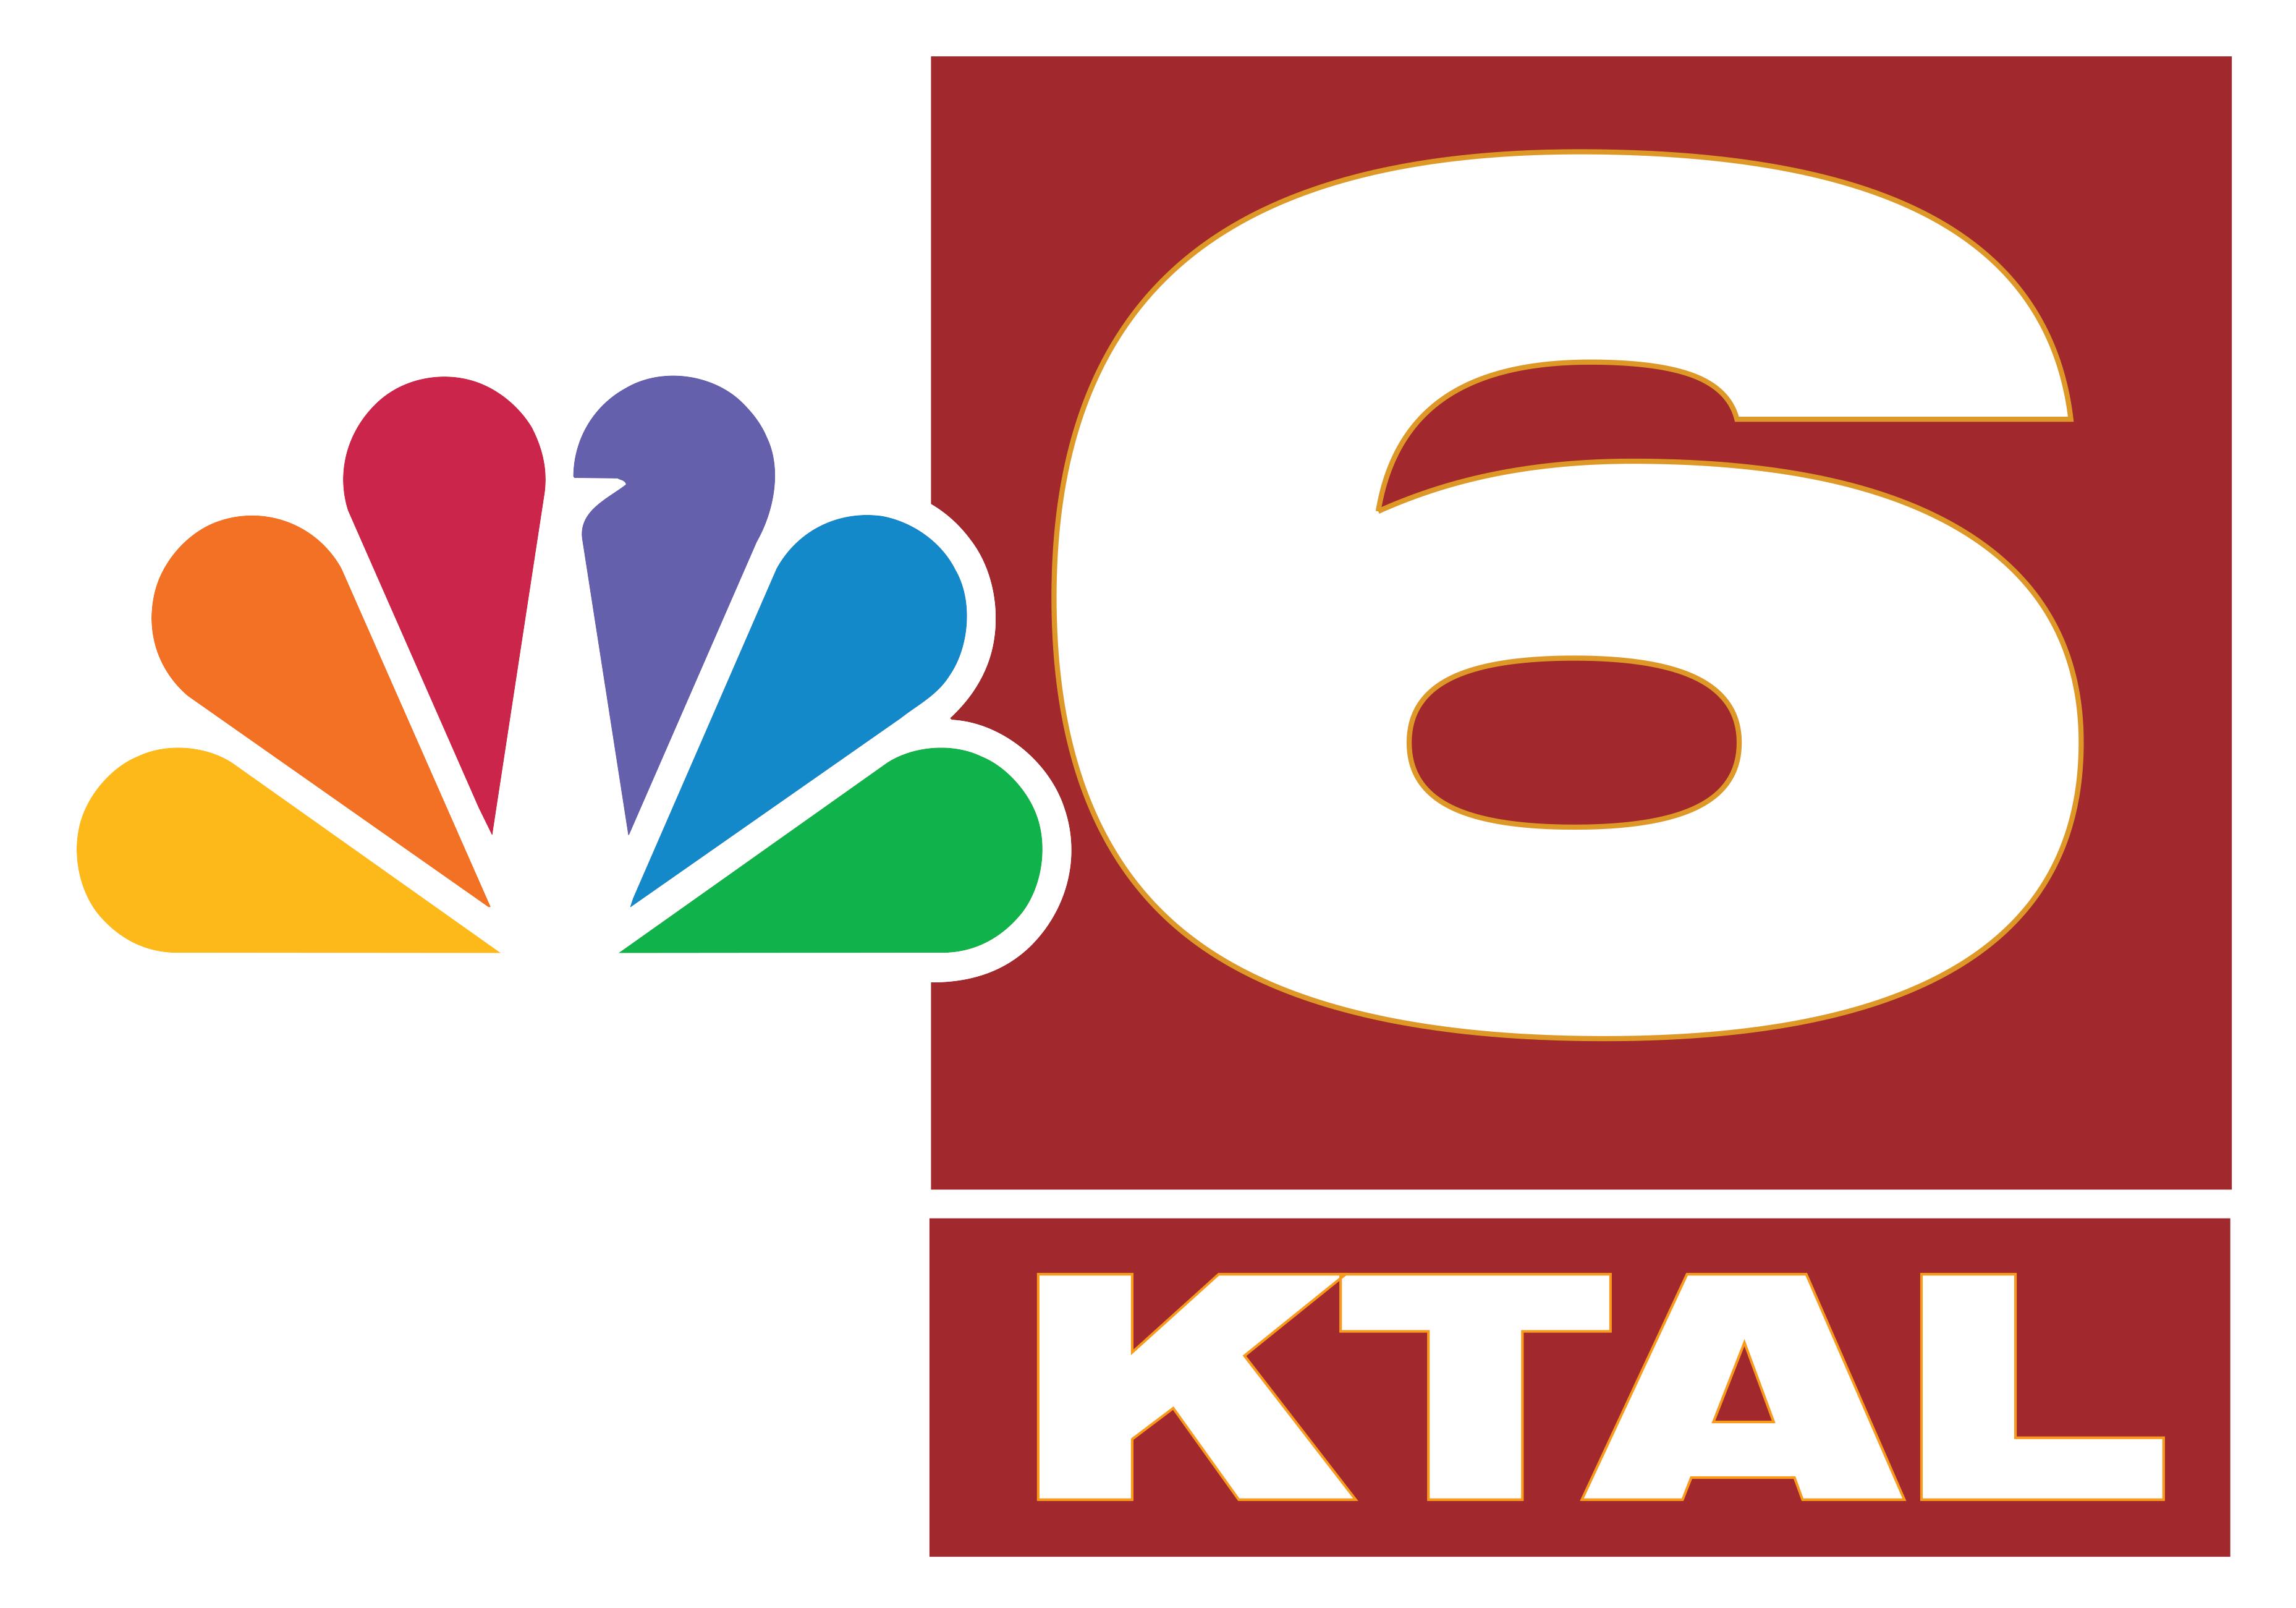 1. KTAL logo (Media)